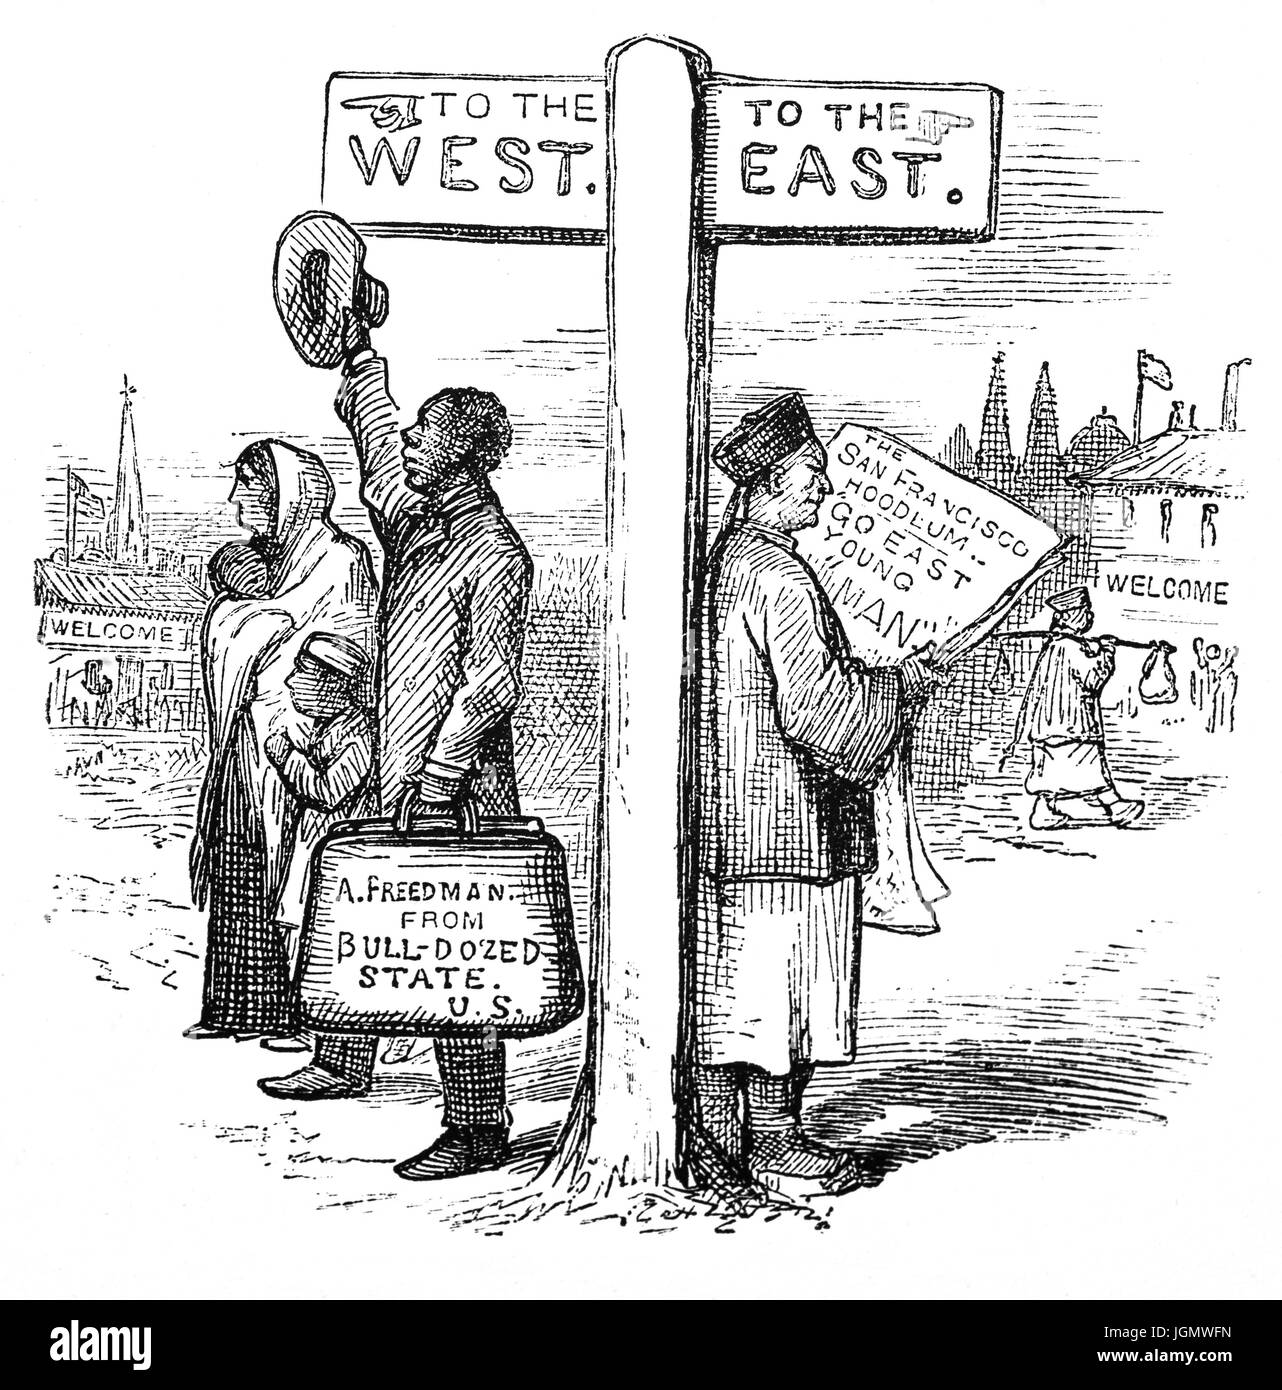 1879: "Zwei schwierige Probleme selbst zu lösen", 19. Jahrhundert politischer cartoon, San Francisco, California, Vereinigte Staaten von Amerika Stockfoto